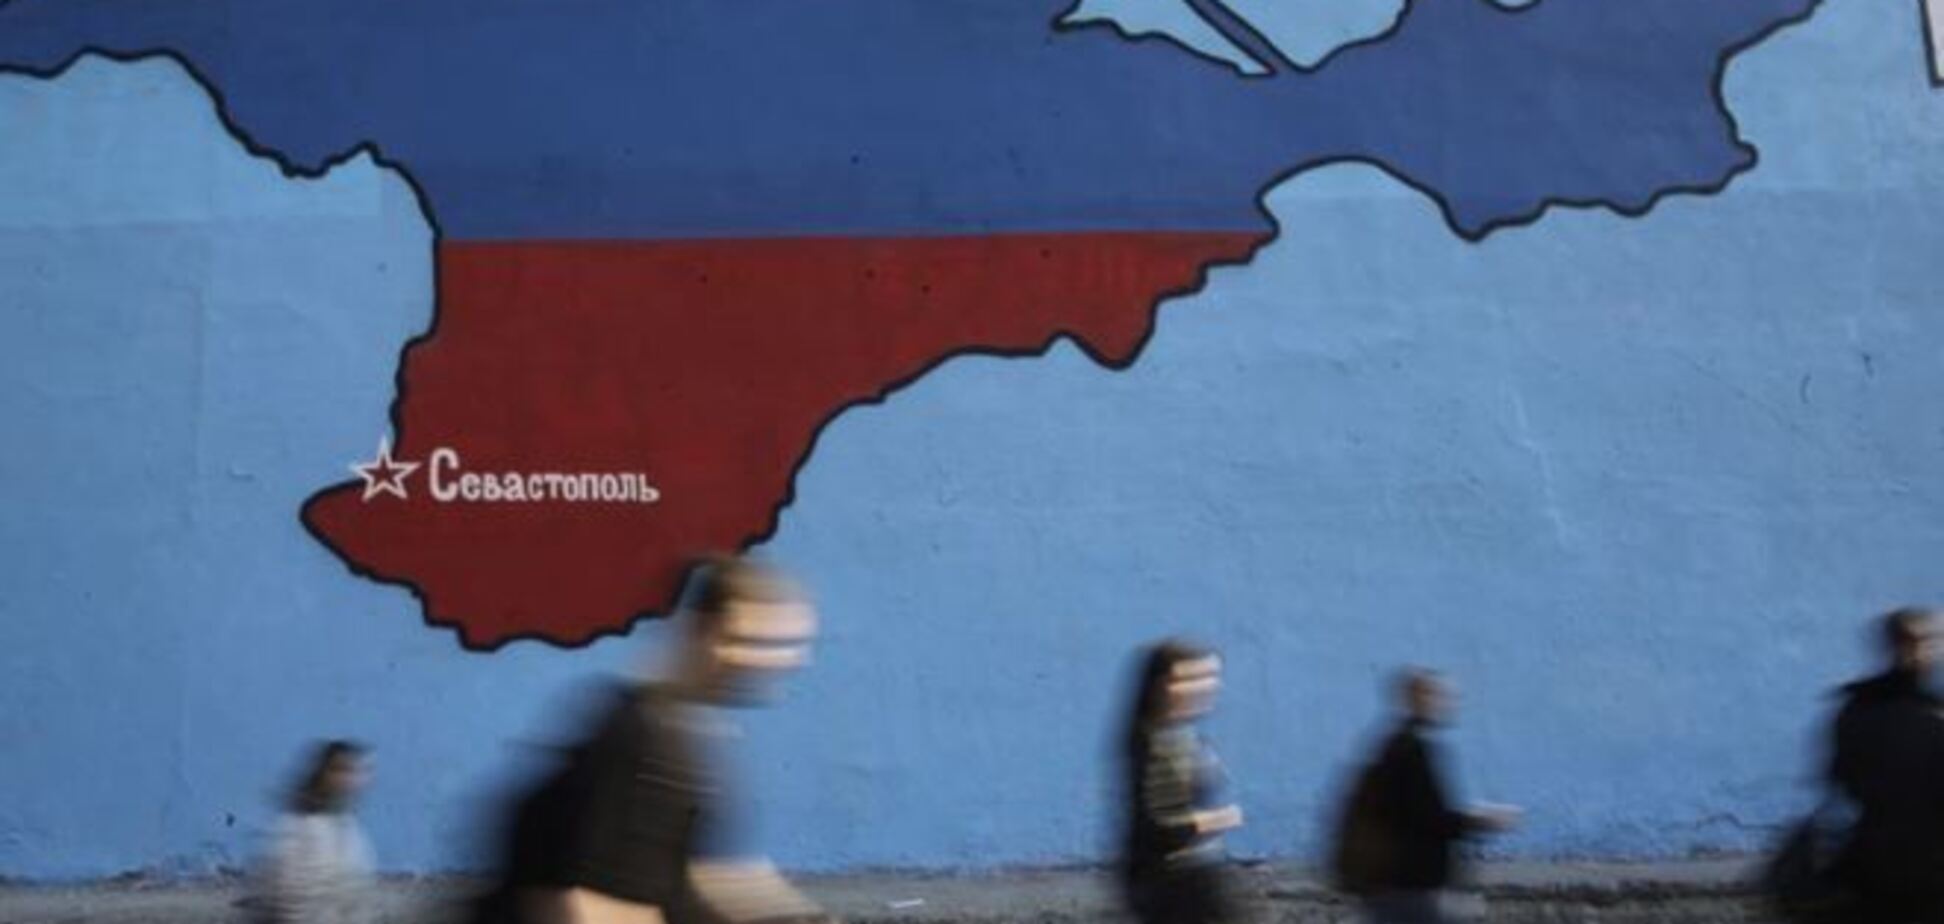 Російський політик назвав крайню дату повернення Криму до складу України